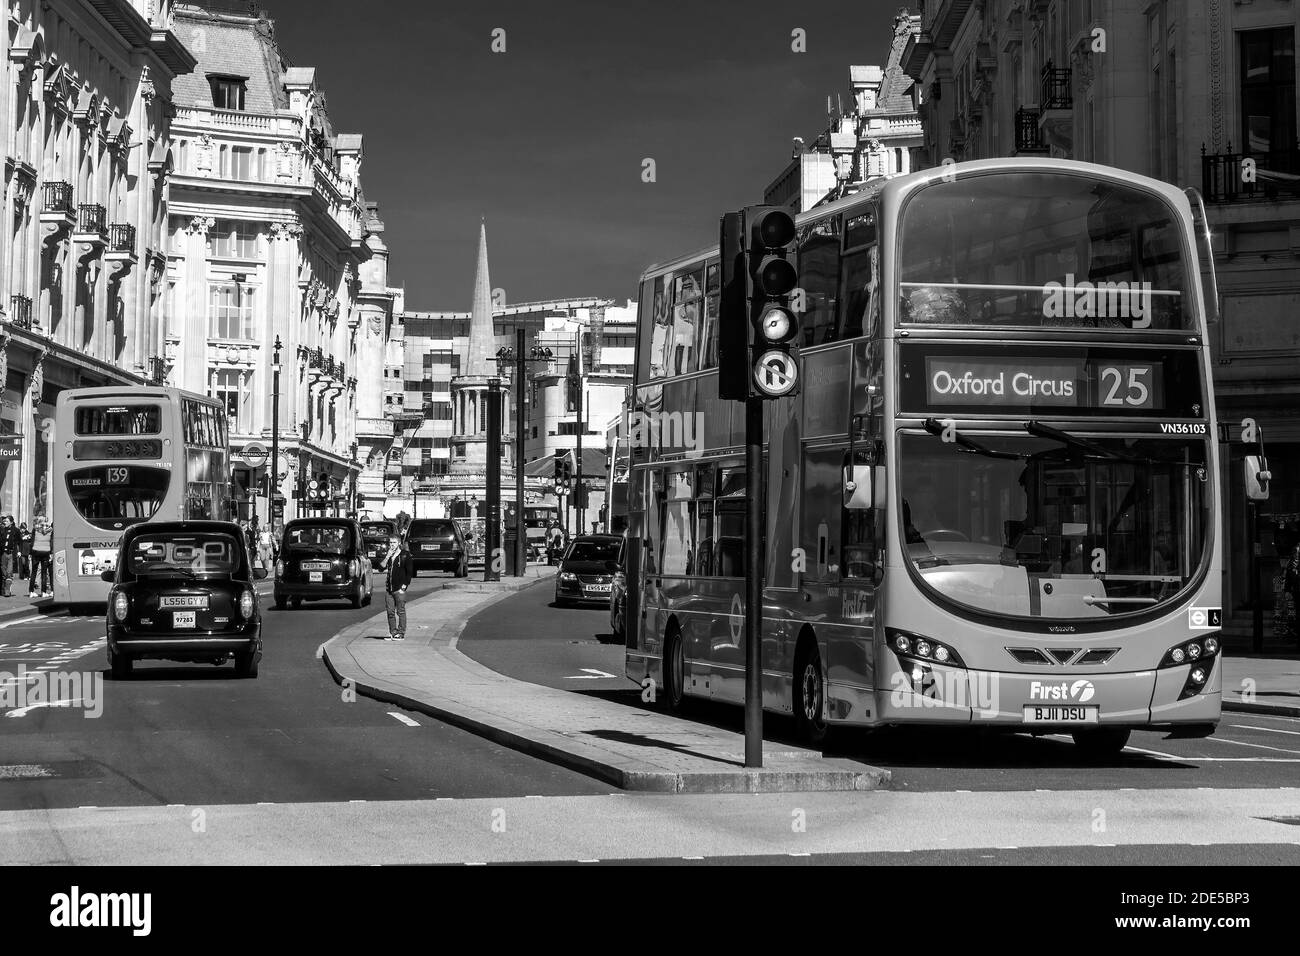 Londres, Royaume-Uni, 1er avril 2012 : New Modern Routemaster double decker bus rouge dans New Oxford Street qui fait partie de l'infrastructure de transport public des villes Banque D'Images